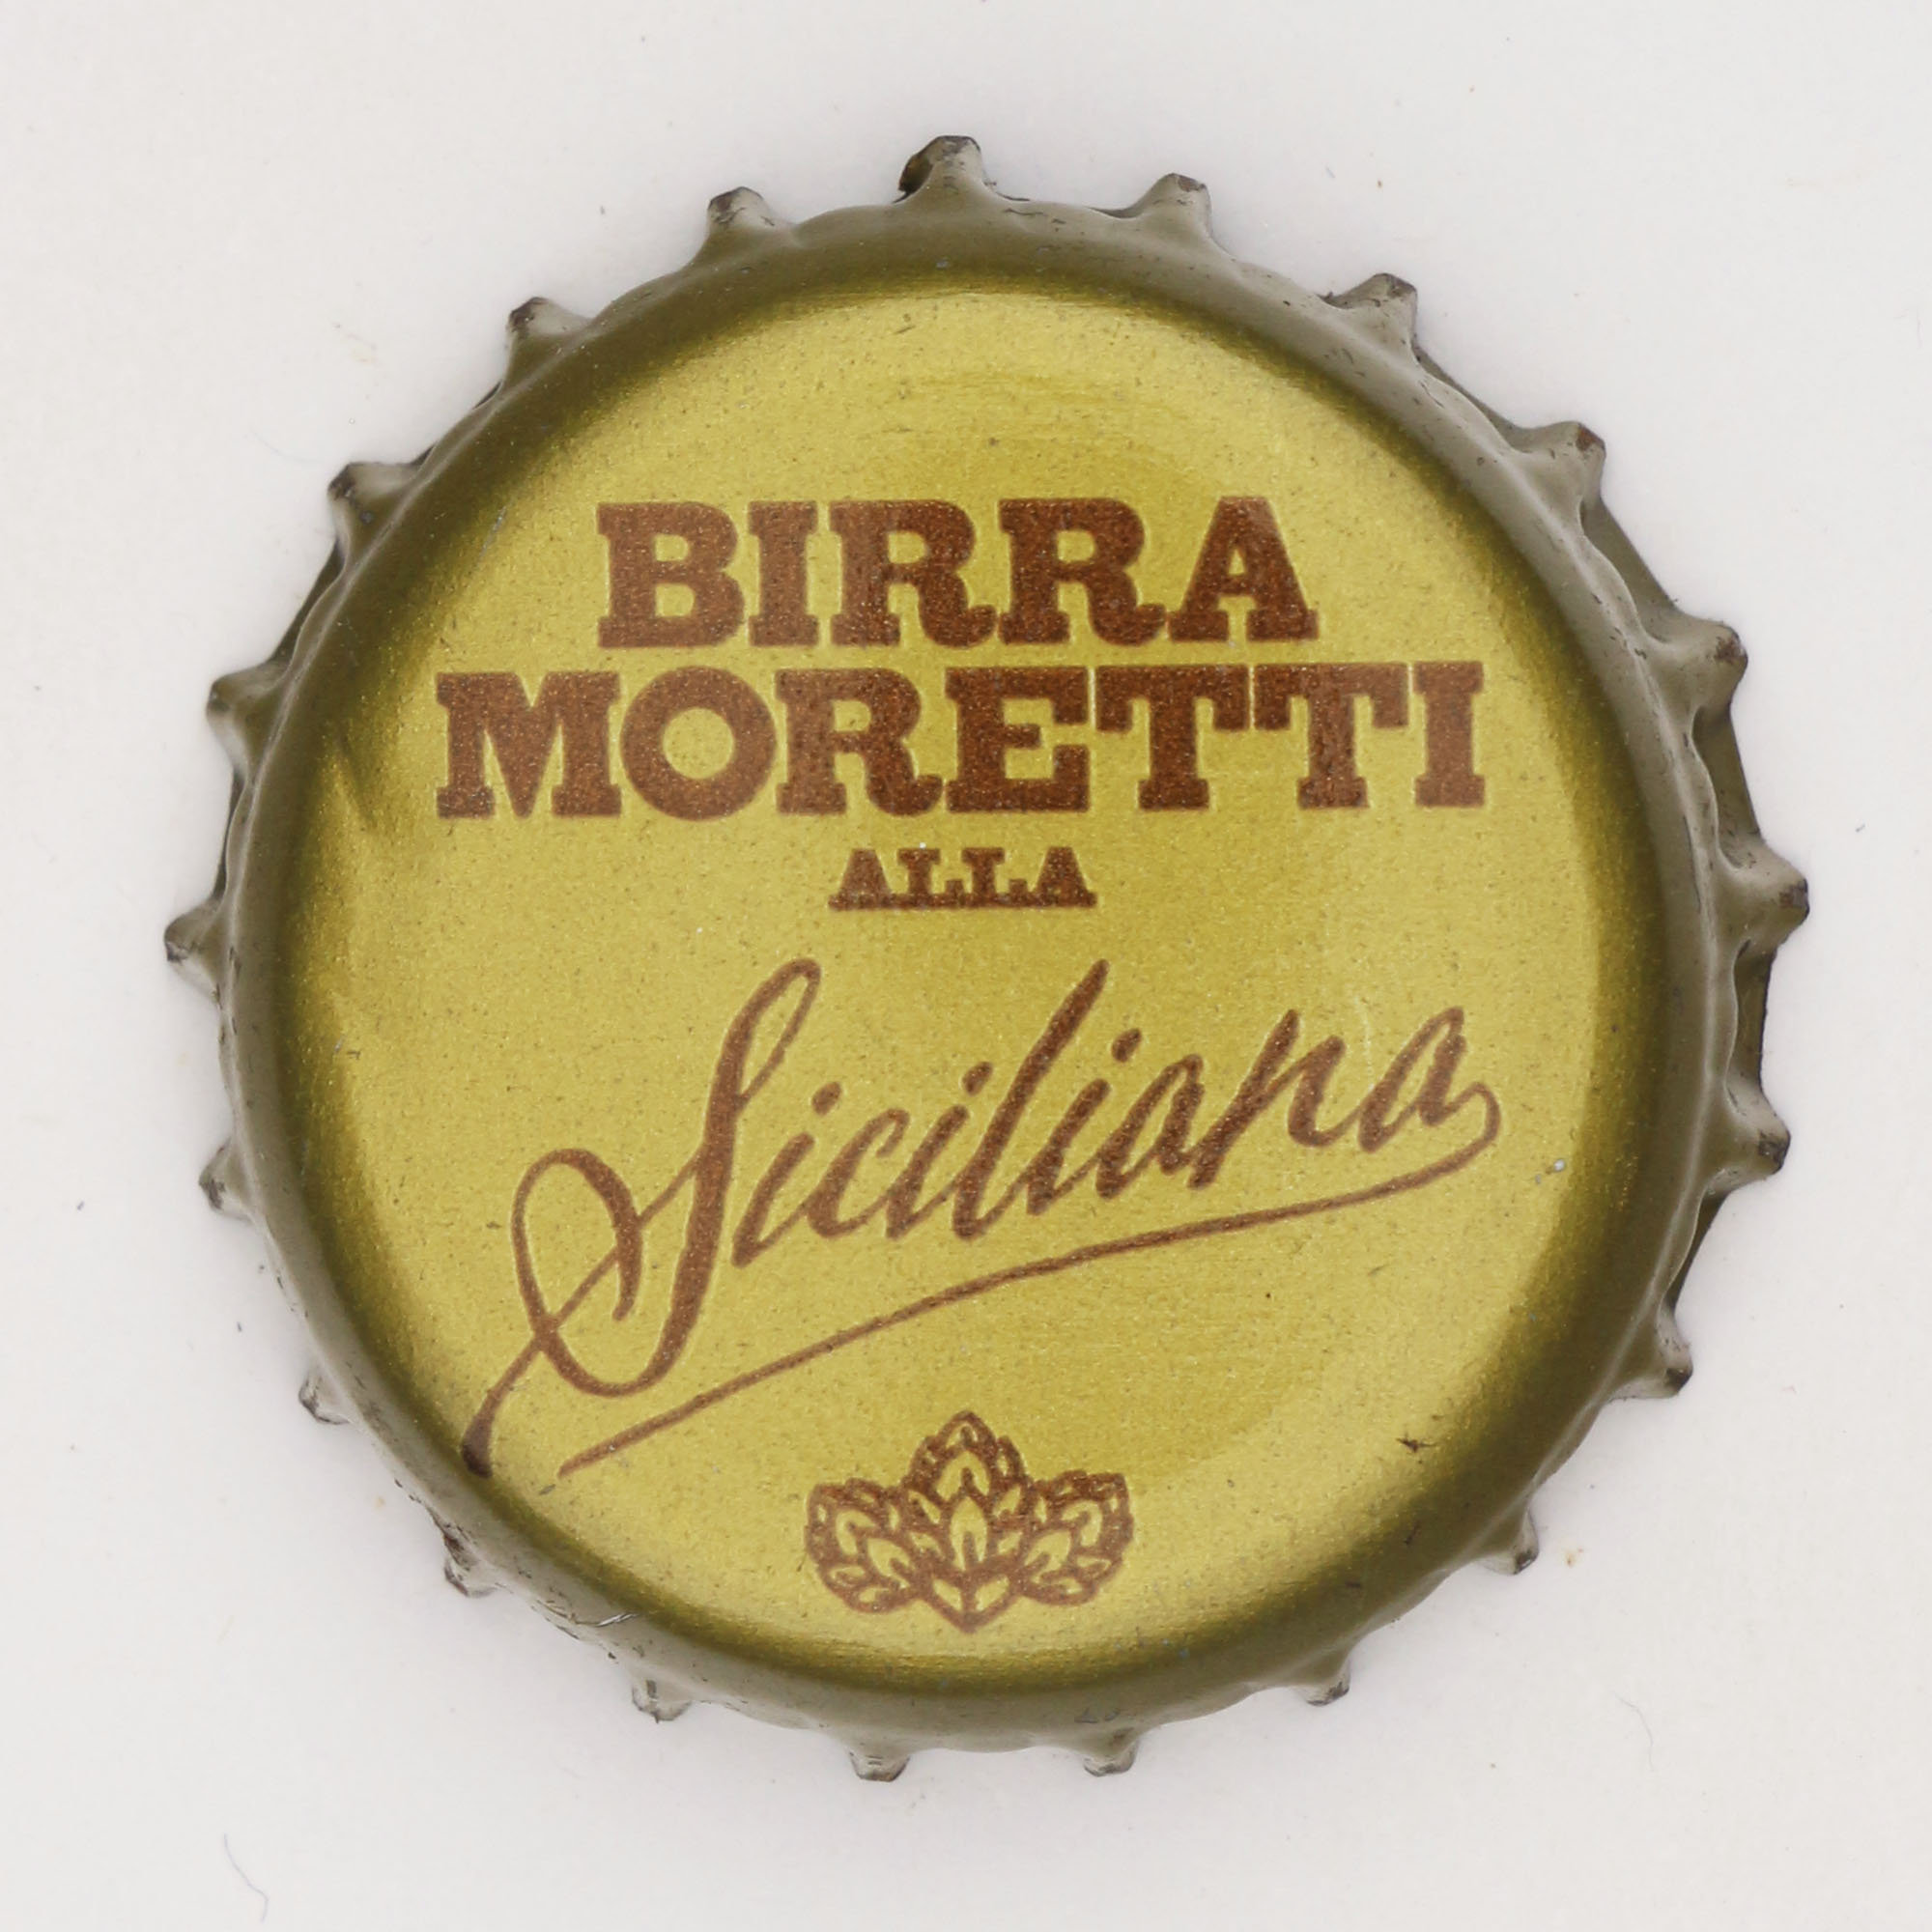 Birra alla Siciliana